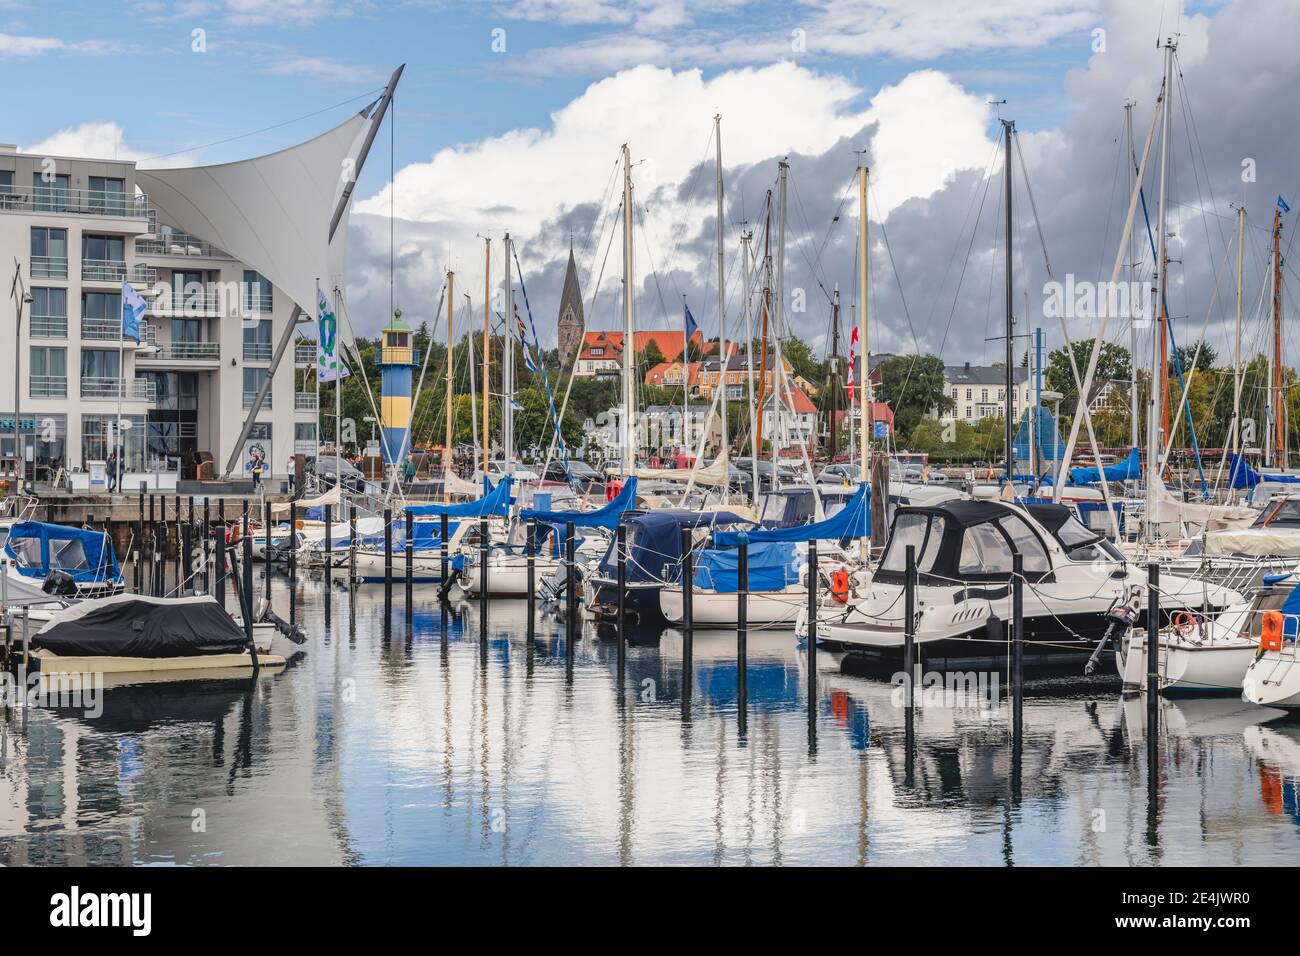 Alemania, Schleswig-Holstein, Eckernforde, varios barcos amarrados en el puerto de la ciudad Foto de stock